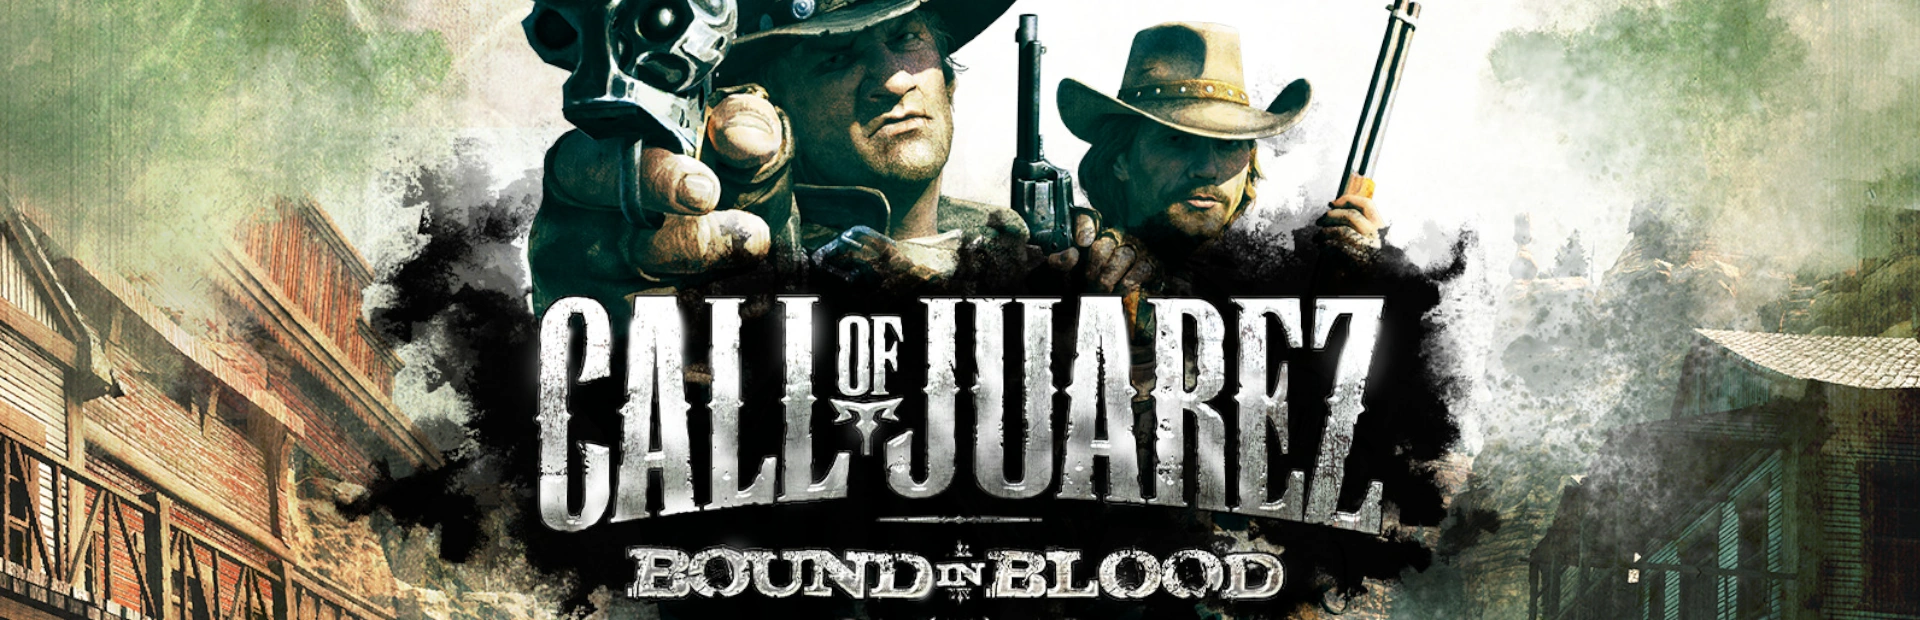 دانلود بازی Call of Juarez: Bound in Blood برای PC | گیمباتو